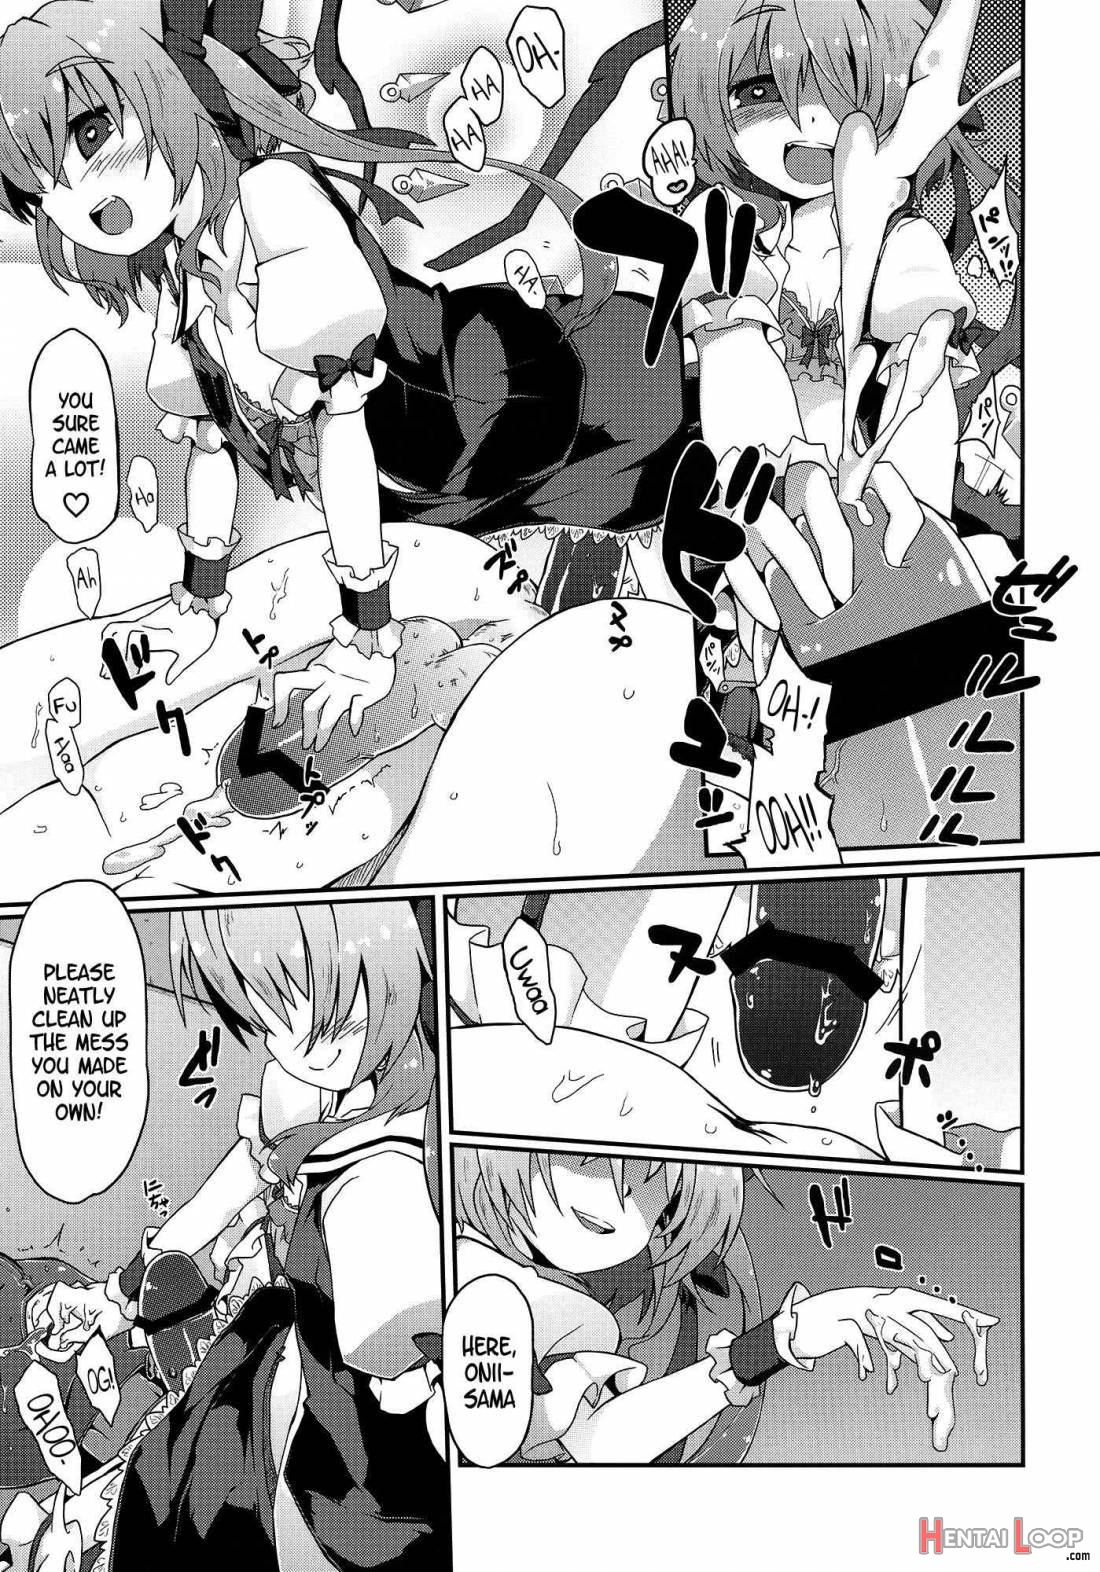 Flan-chan S: Sadistic Scarlet Style page 18